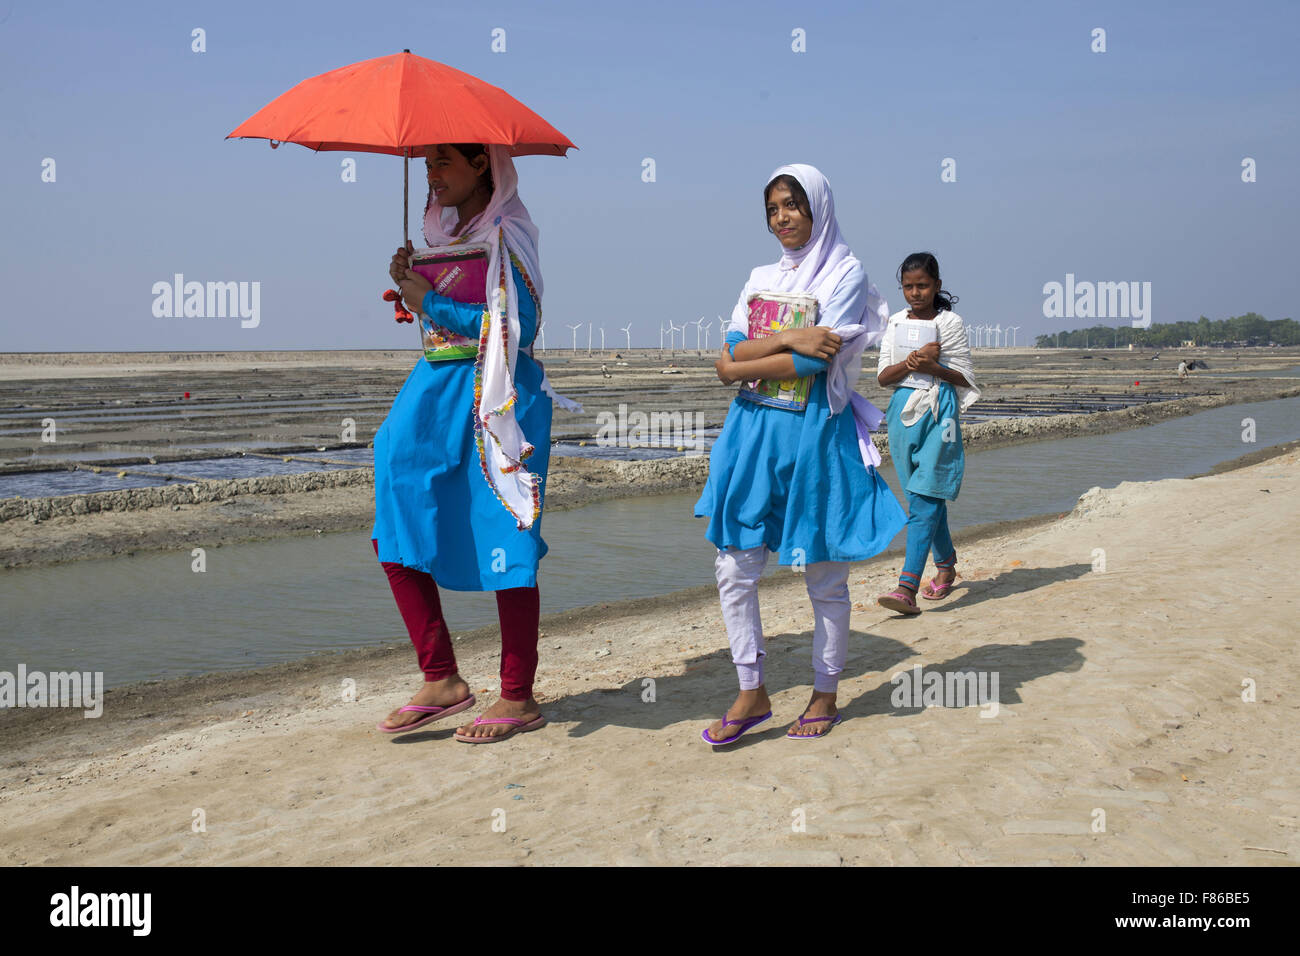 28. November 2015 - Cox Bazar, Bangladesch - COX BAZAR, Bangladesch - November 28: Ölförderung Kinder der steigende Meeresspiegel Bereich Kutubdia Insel im Cox Bazar Viertel am 28. November, 2015.Kutubdia, eine Insel der Cox Bazar Küste. die Widrigkeiten der Natur ausgelöst vor allem durch Klima ändern. In den letzten zwei Jahrzehnten wurden die Auswirkungen des Klimawandels in Bangladesch Beschleunigung. Kutubdia ist auch schwer getroffen. Der Platz ist sehr anfällig für Wirbelstürme und Sturmfluten, die häufige und intensive in Bangladesch sowie steigender Meeresspiegel und stärkeren Wellen geworden sind. Das Ergebnis sind massive ero Stockfoto